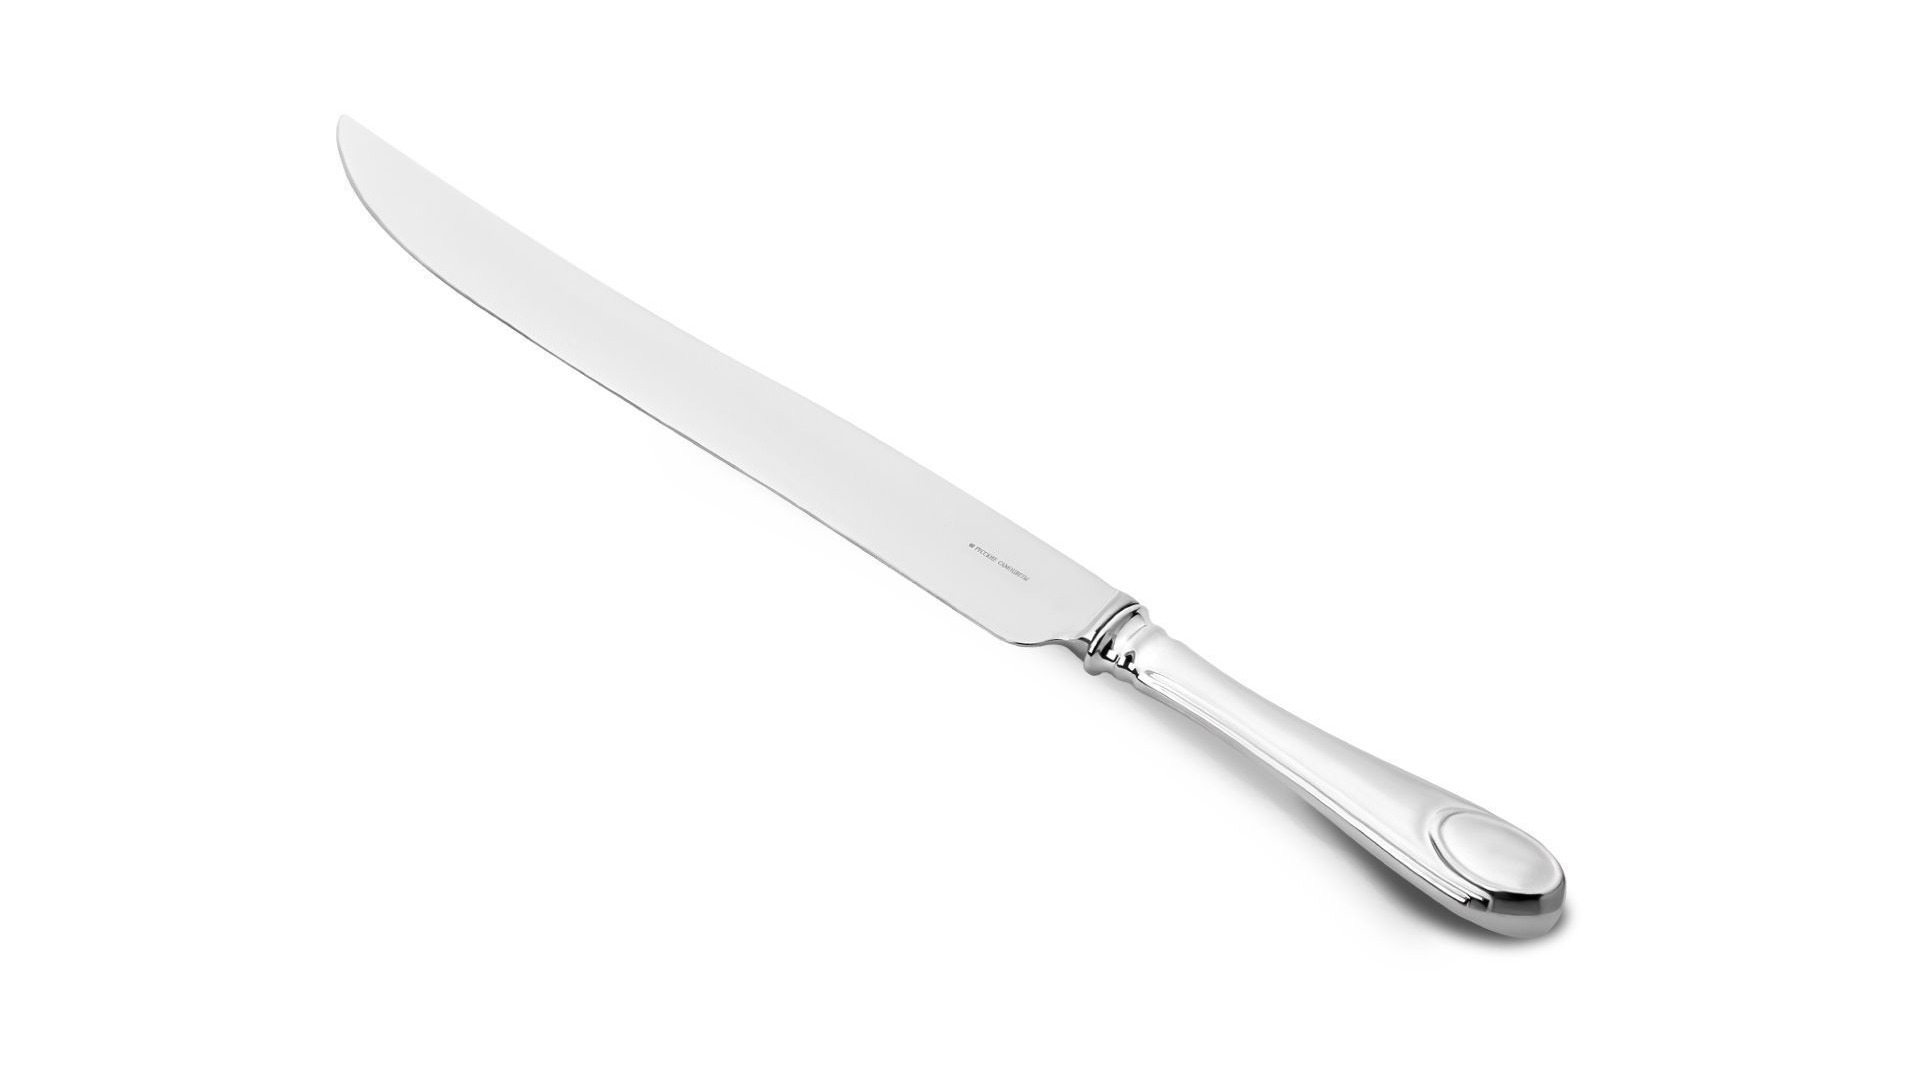 Нож для мясных блюд Русские самоцветы 116,88 г, серебро 925